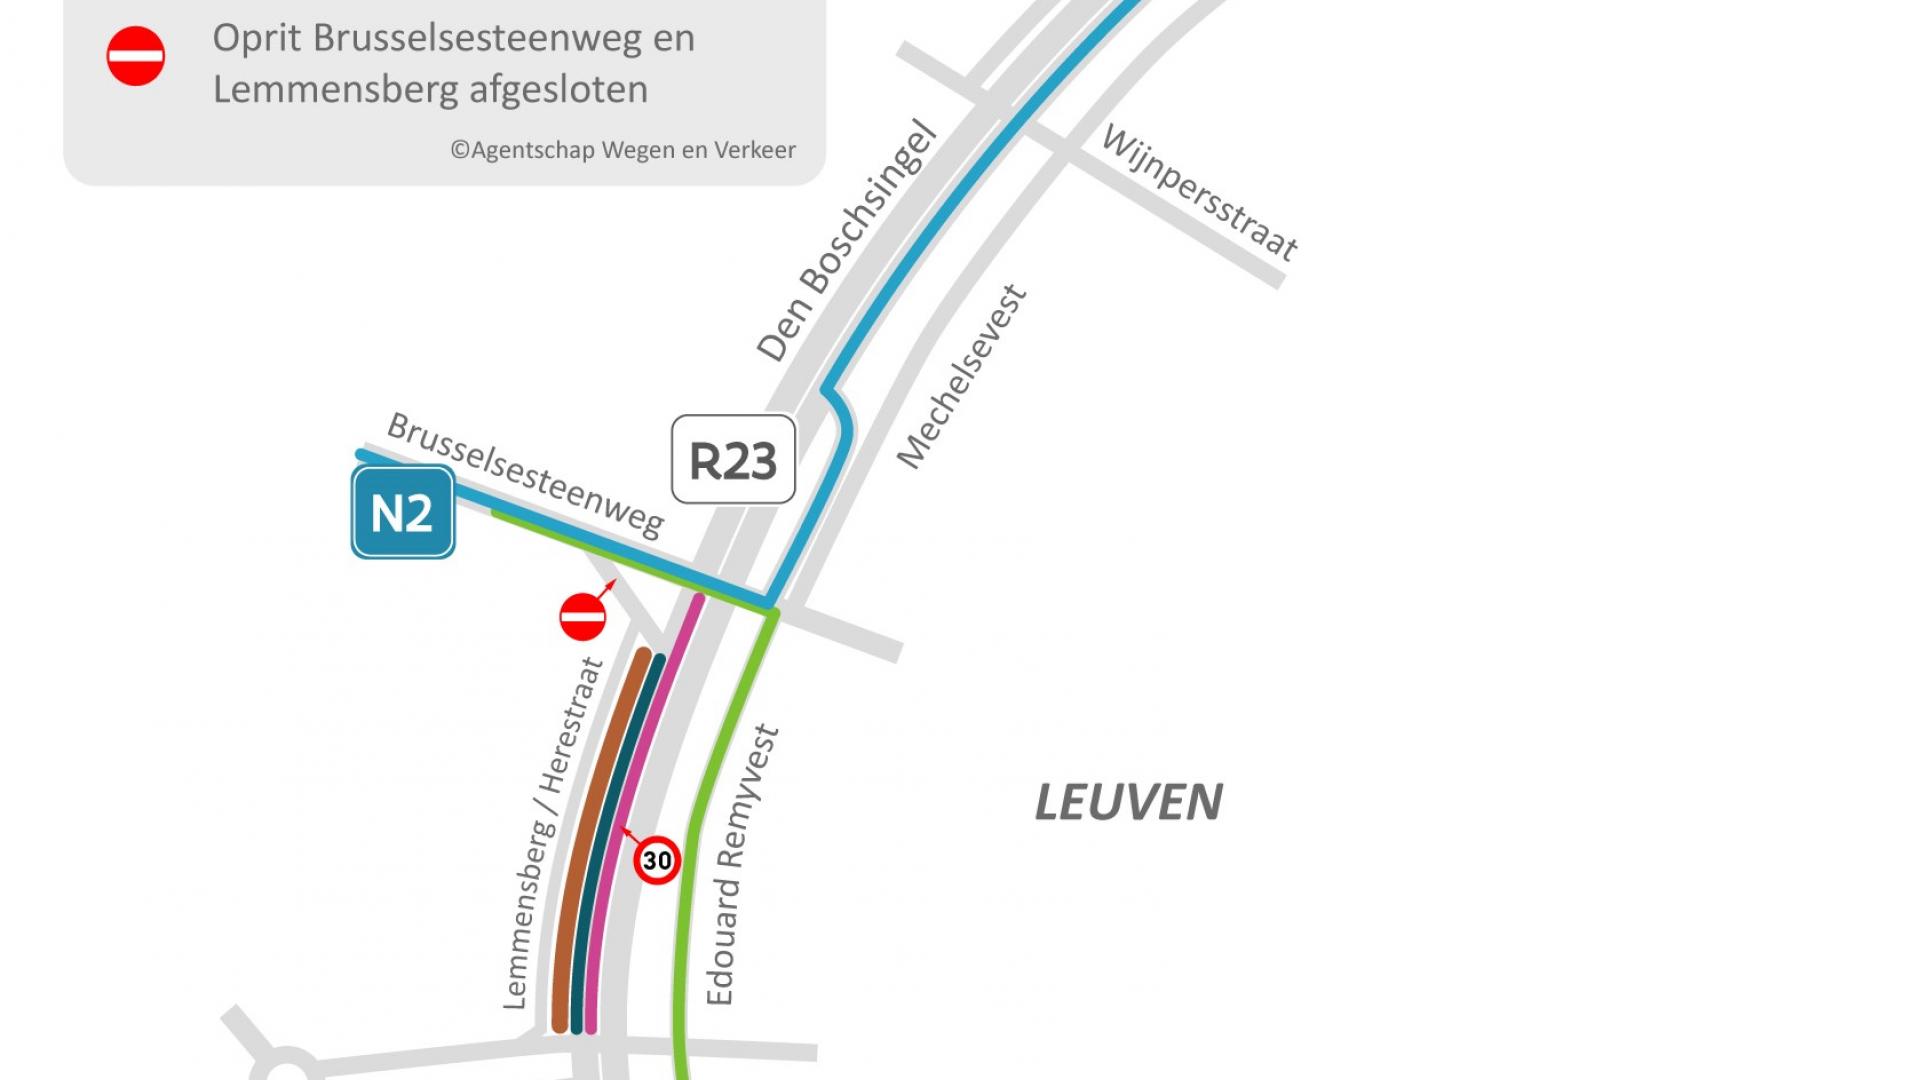 Omleiding voor fietsers, openbaar vervoer en gemotoriseerd verkeer tijdens de derde fase van de werken aan de oprit Brusselsesteenweg naar de Rennessingel